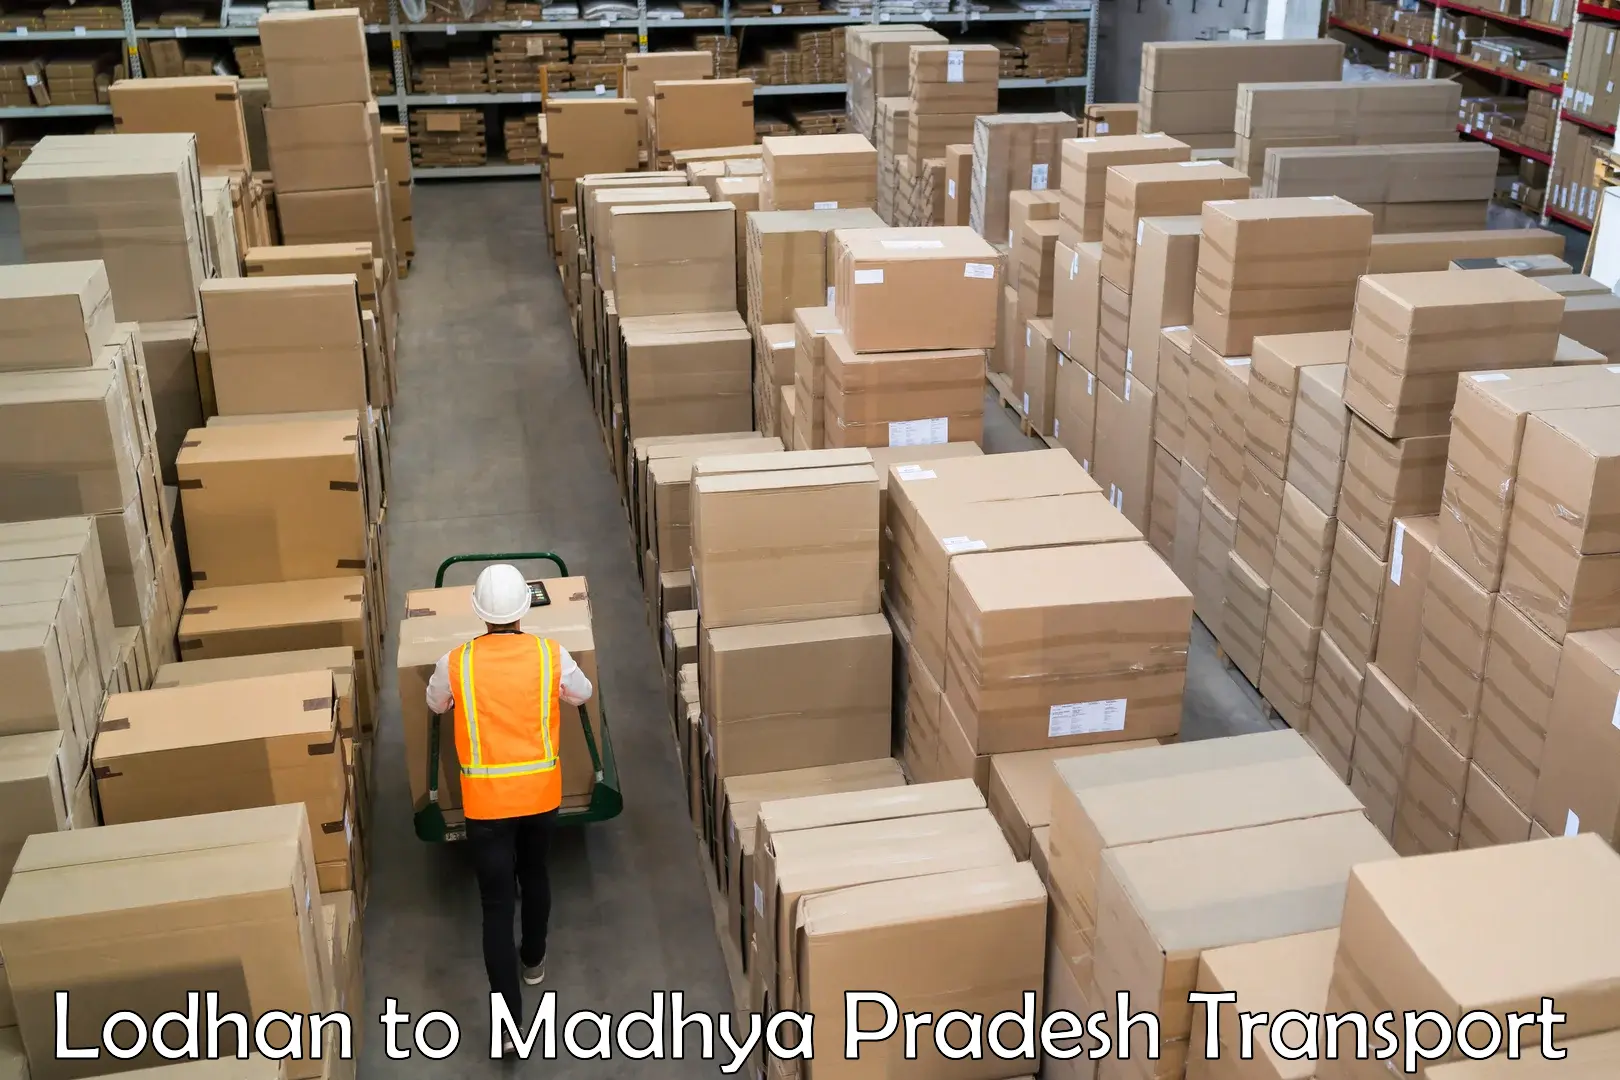 Shipping partner Lodhan to Narsinghgarh